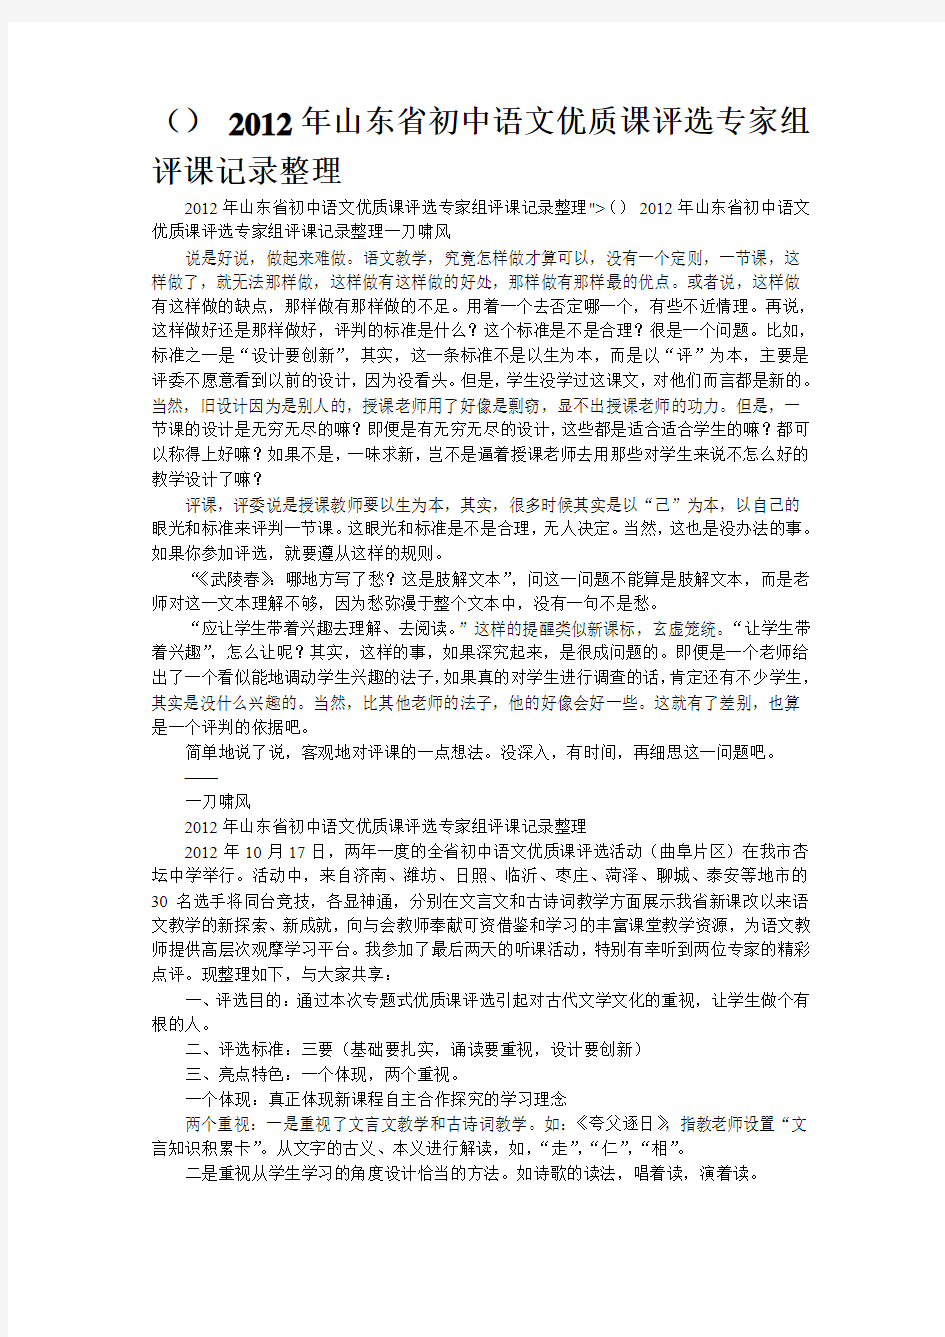 2012年山东省初中语文优质课评选专家组评课记录整理